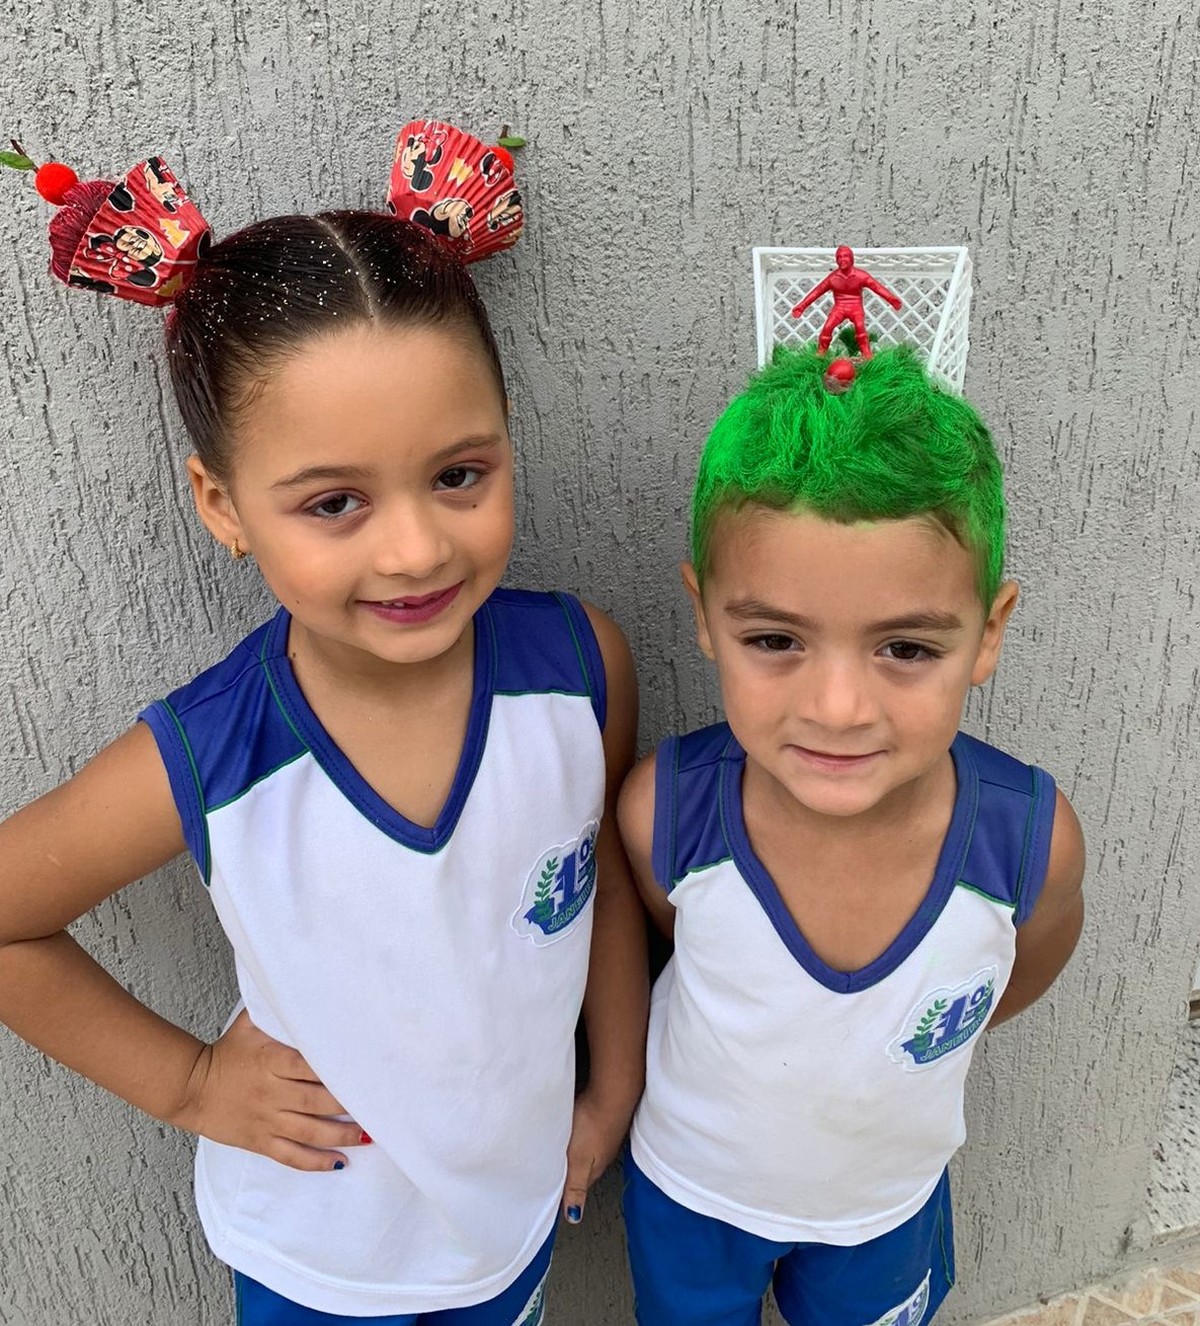 Dia do Cabelo Maluco': alunos de escola do Ceará surpreendem com penteados  criativos | Brasil | O Globo